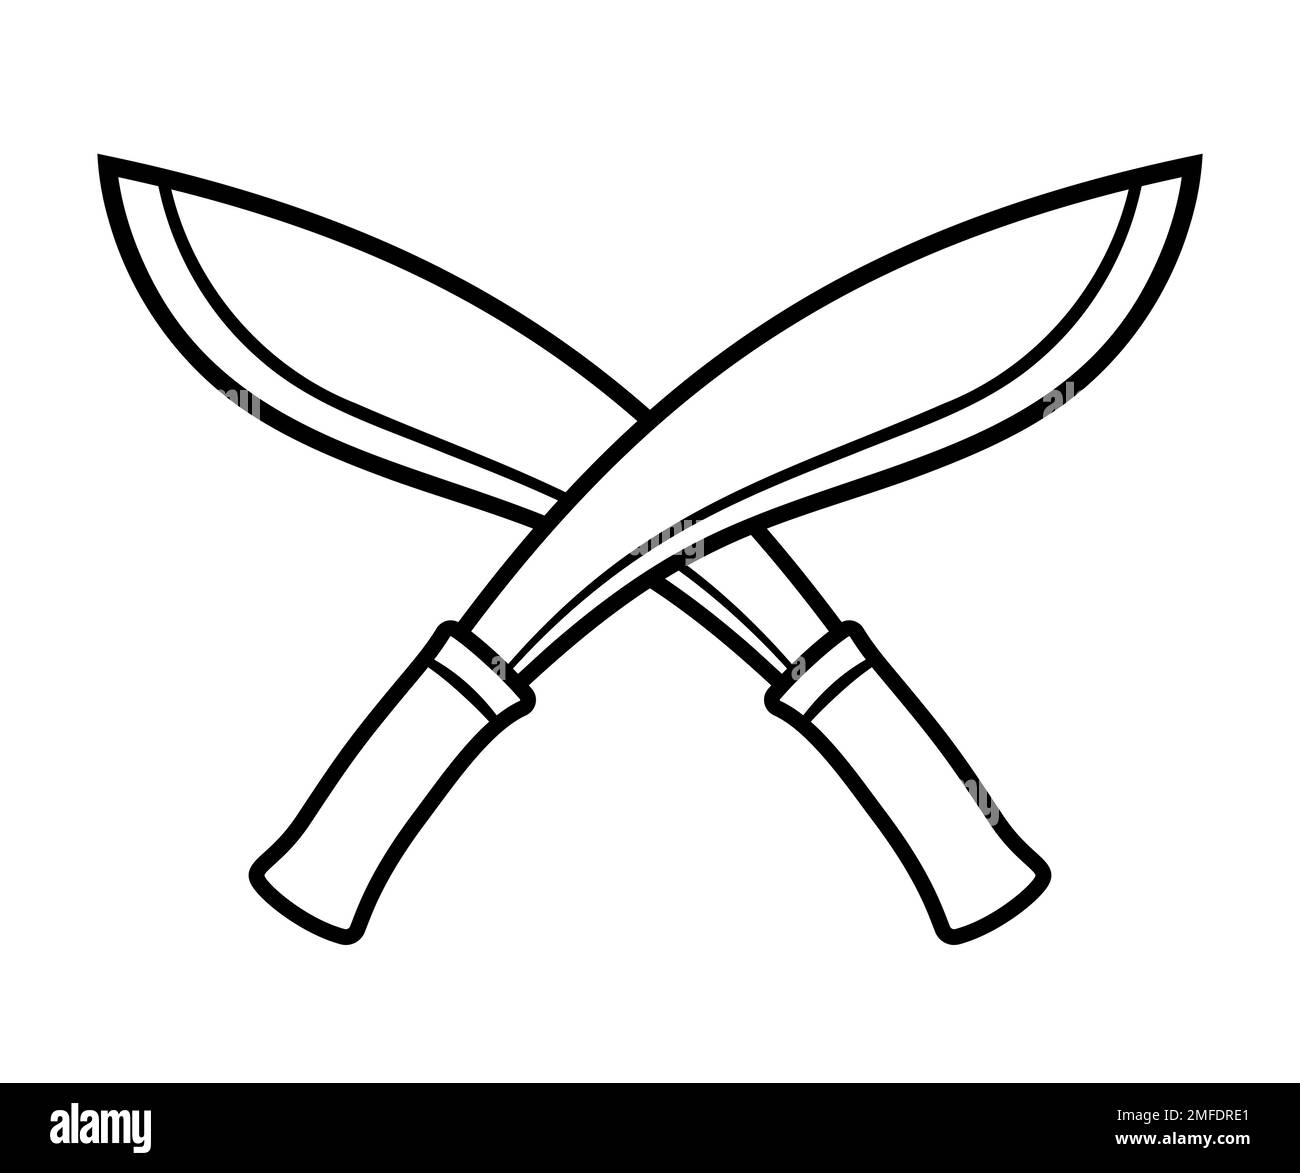 Zwei gekreuzte Kukenmesser. Traditionelle nepalesische Machetenwaffe. Schwarz-weiße Strichgrafik-Logo, Vektorgrafik-Illustration. Stock Vektor